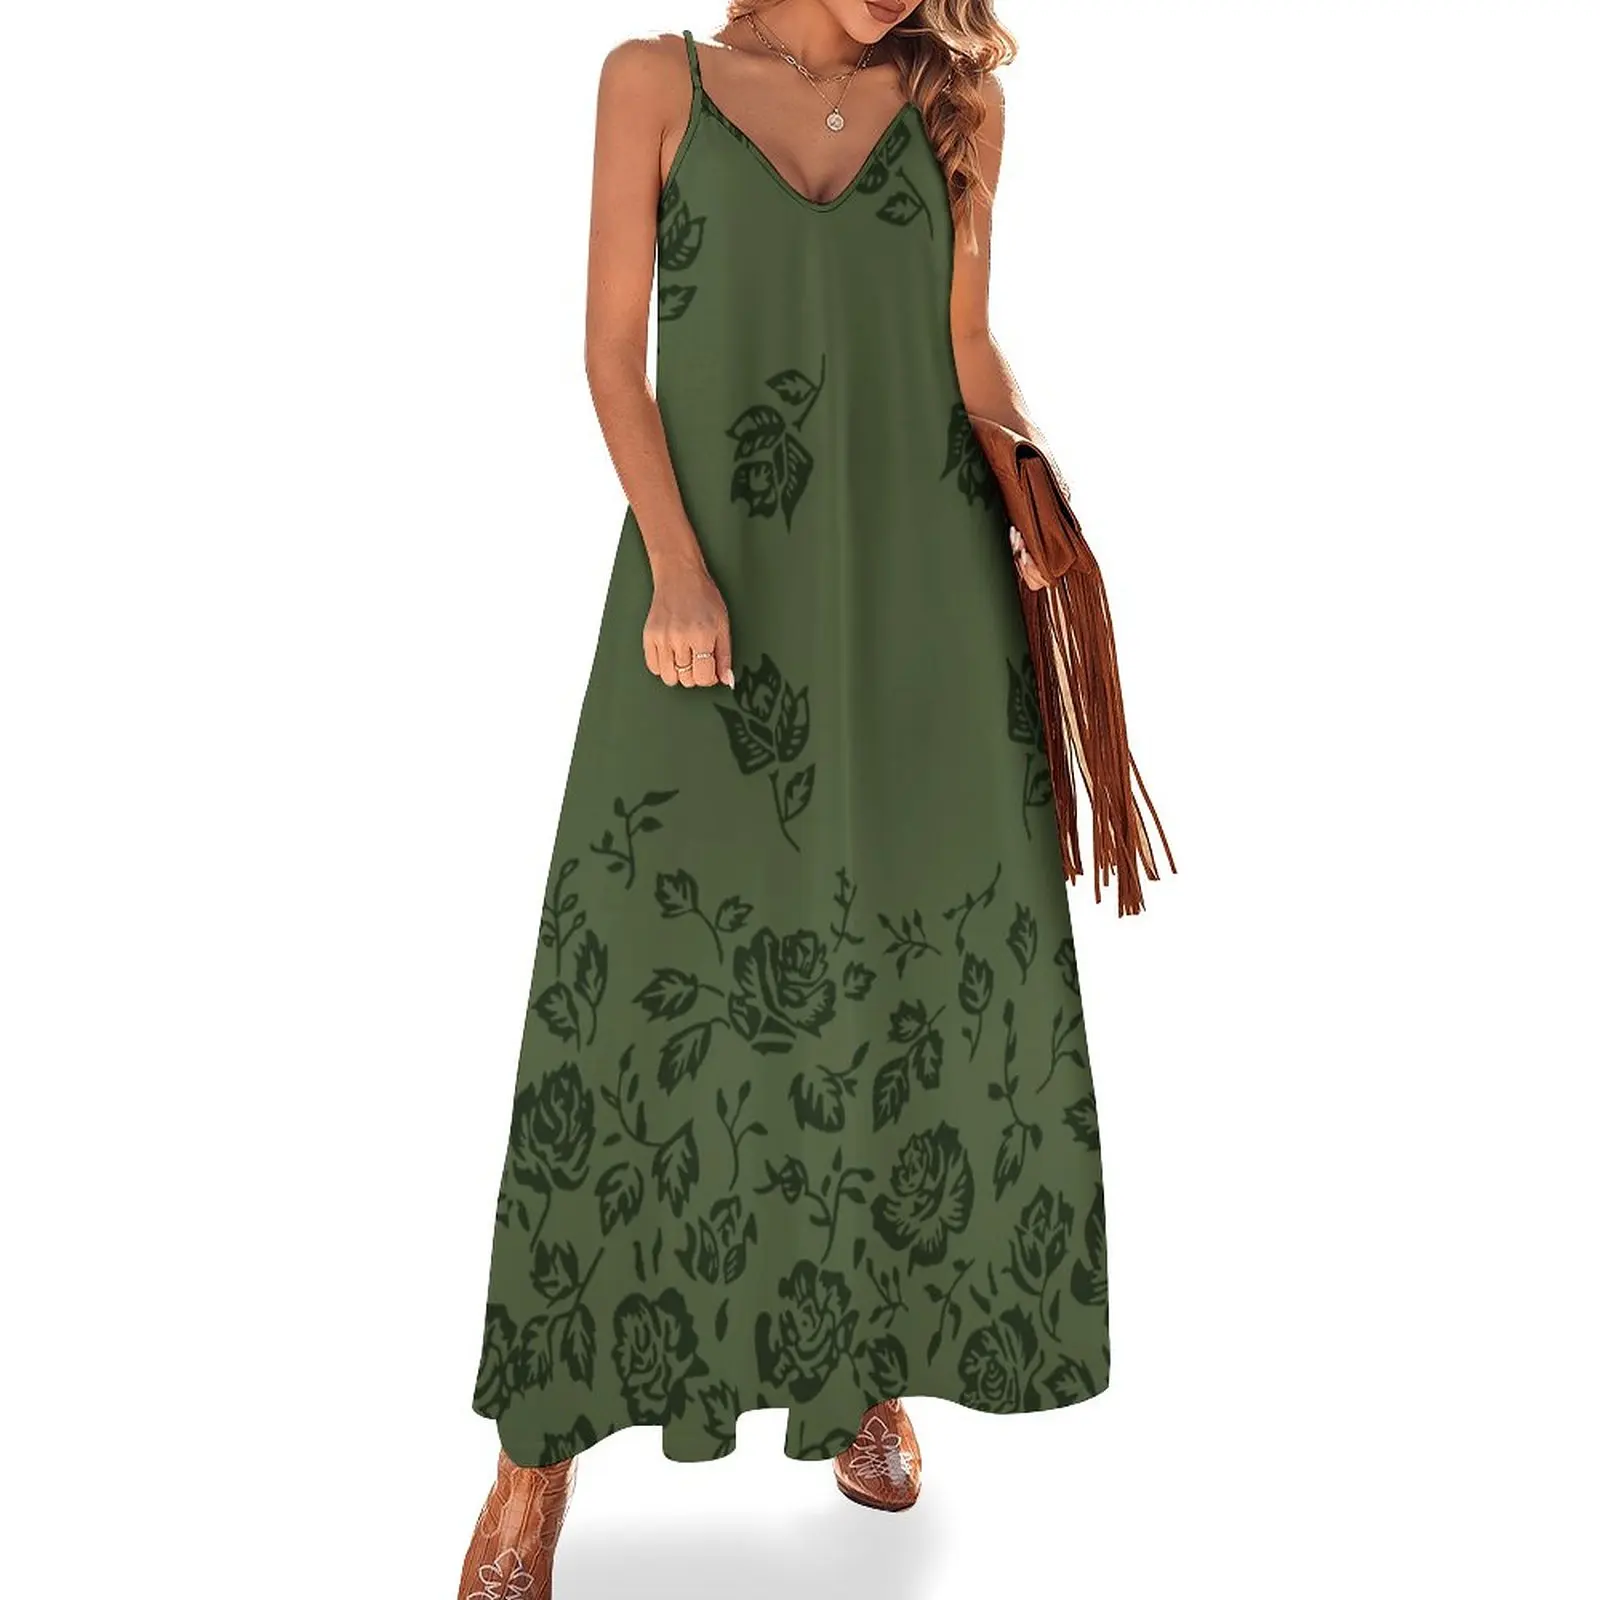 

Платье для дня рождения Bella Swan | Что зеленое Версия 2 | Платье для выпускного вечера Сумерки саги Фанарт без рукавов